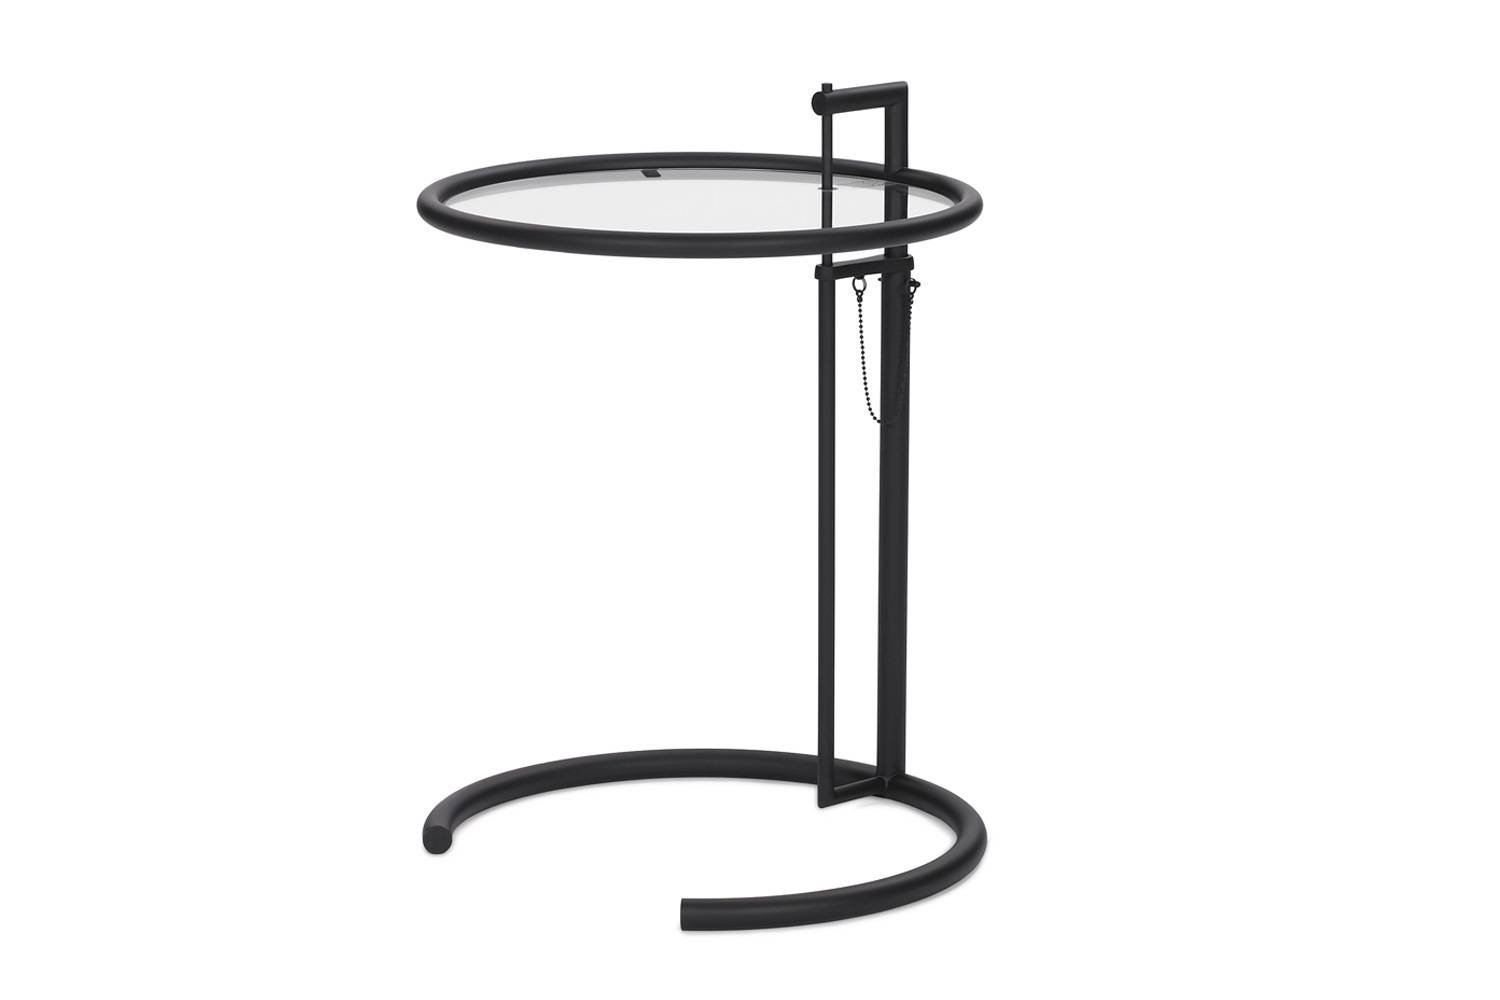 クラシコン アジャスタブルテーブル E1027 フレーム ブラック粉体塗装仕上